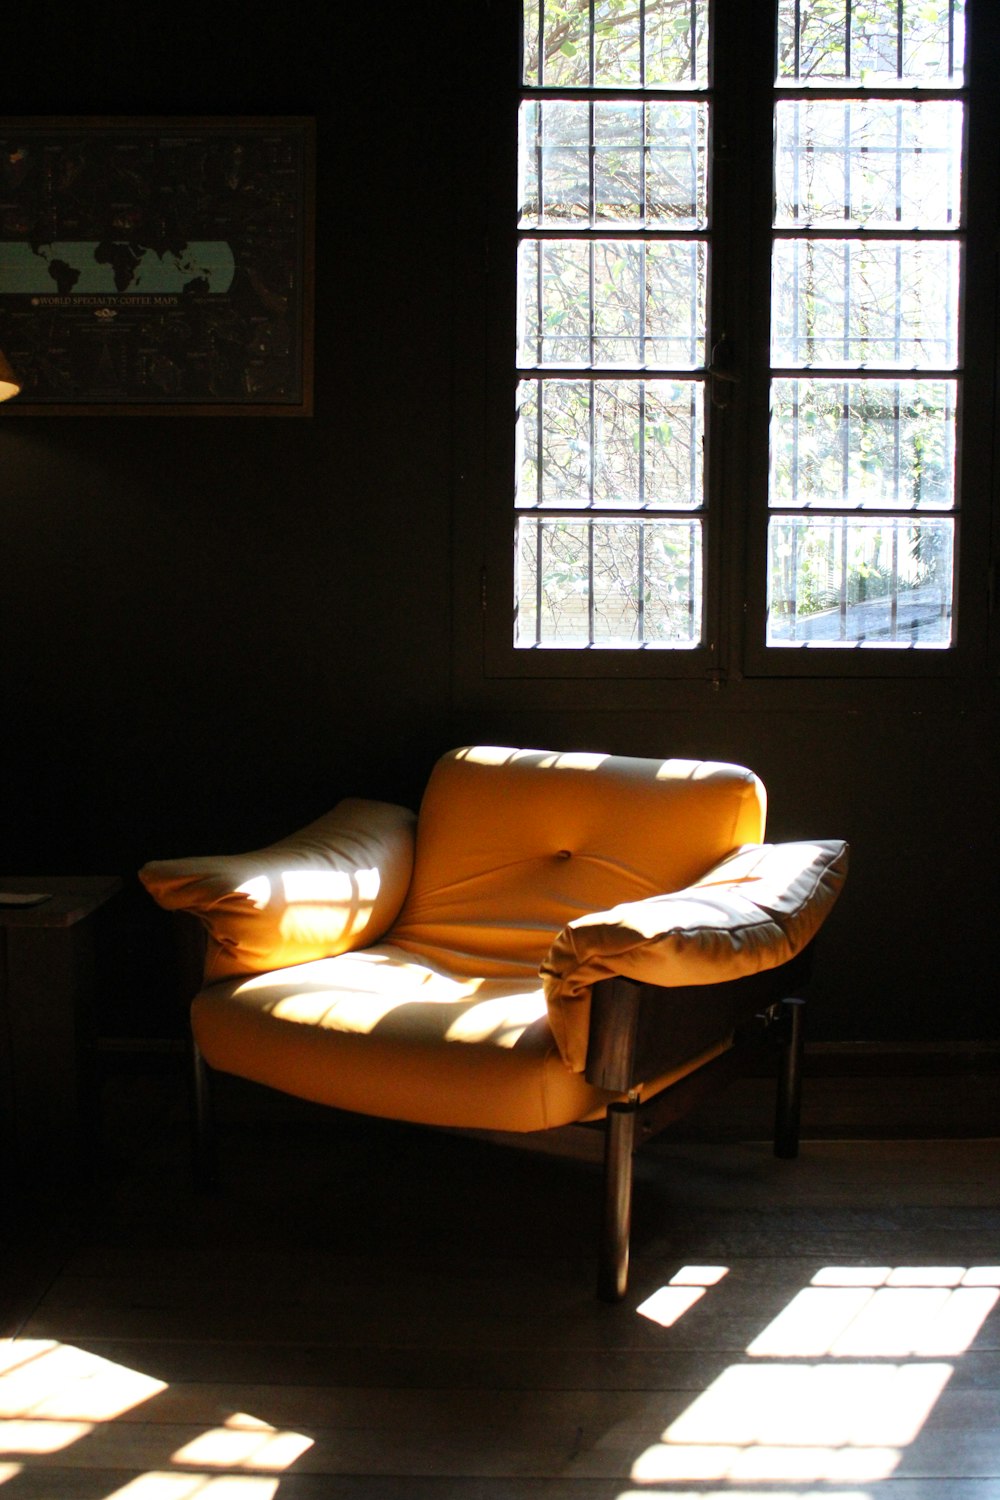 Una silla amarilla sentada en una habitación oscura